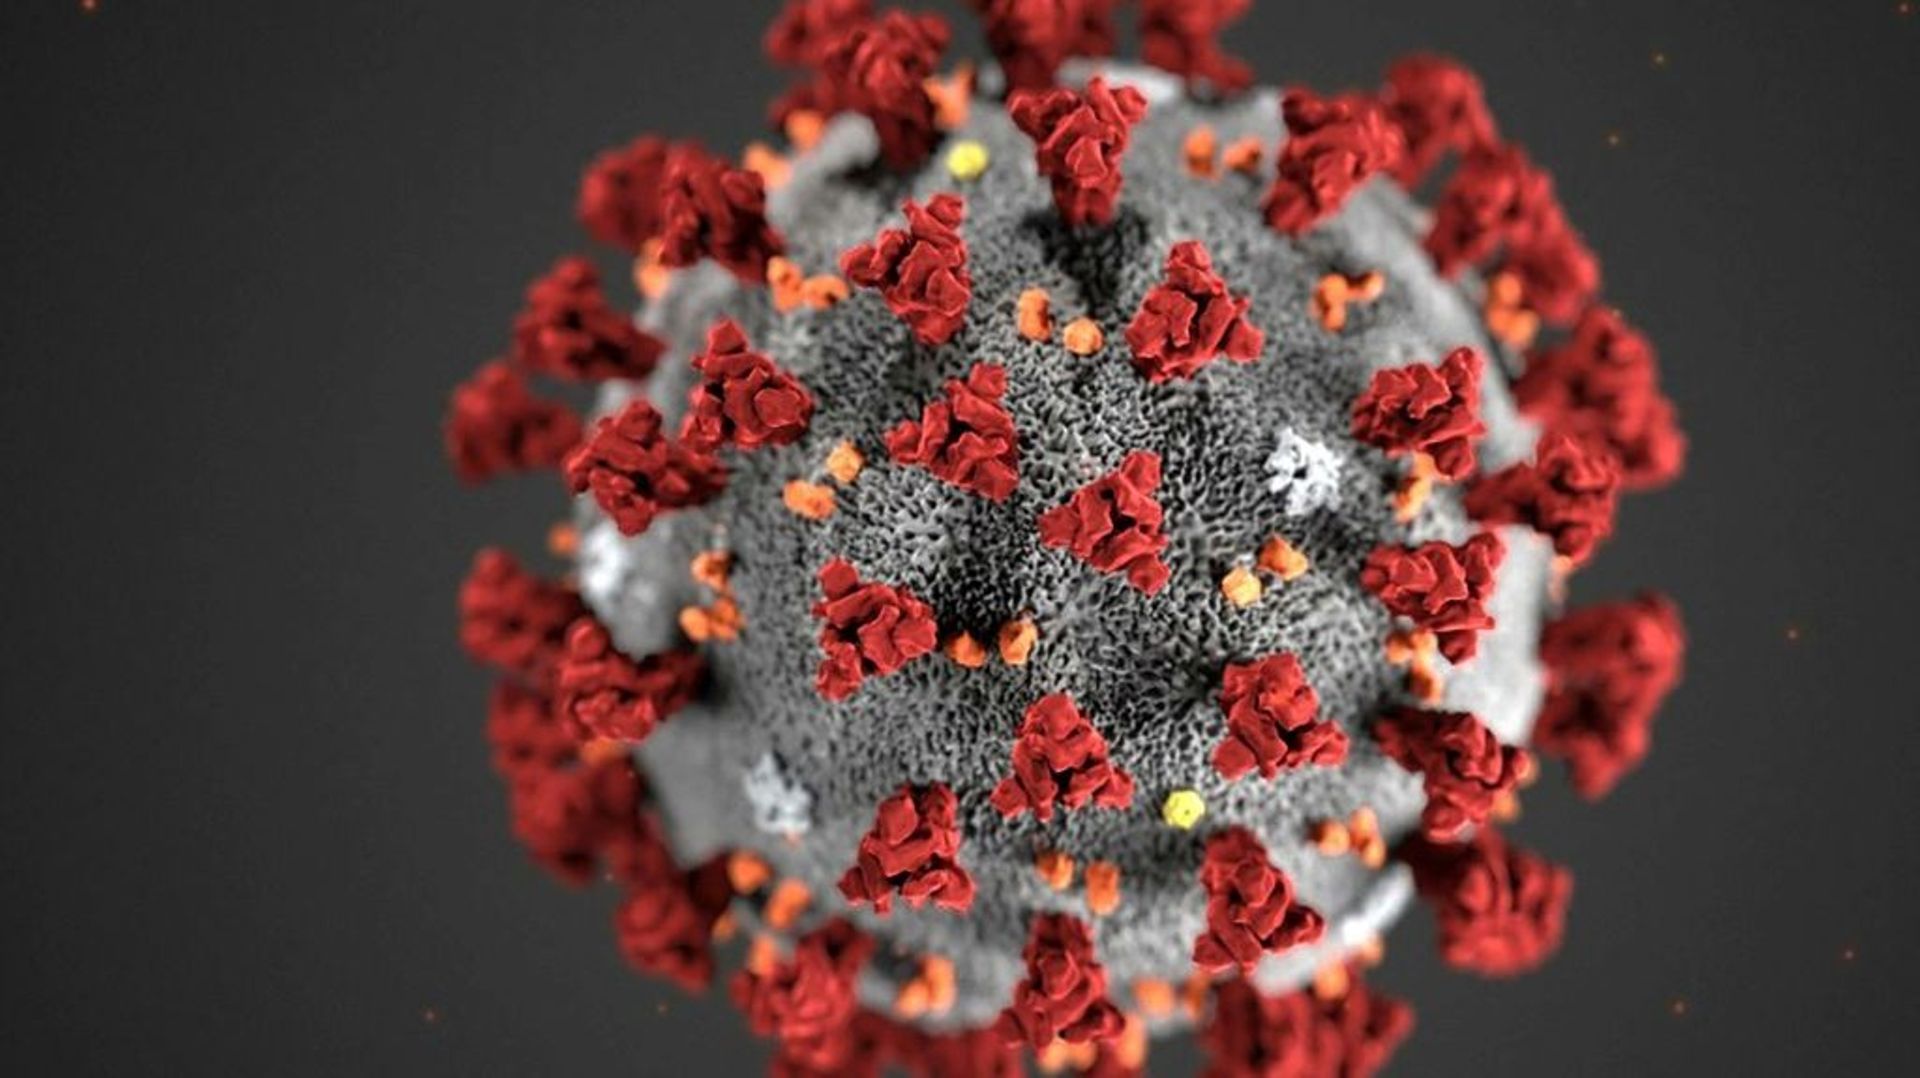 Image obtenue le 3 février 2020 auprès des CDC et montrant la morphologie du nouveau coronavirus COVID-19